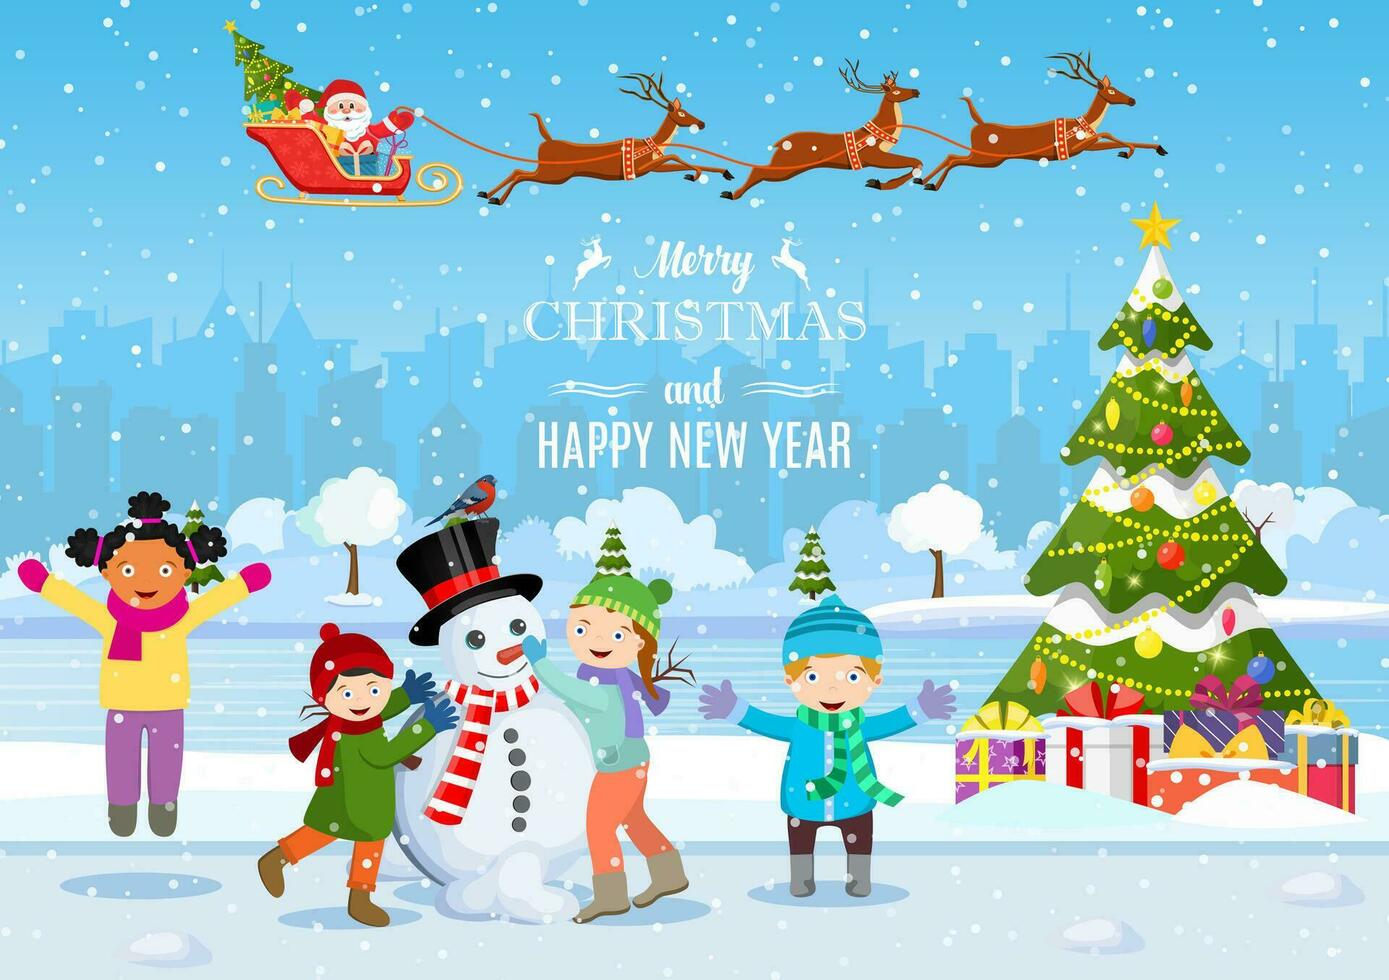 contento nuovo anno e allegro Natale saluto carta. Natale paesaggio. Natale albero. bambini edificio pupazzo di neve. inverno vacanze. vettore illustrazione nel piatto stile